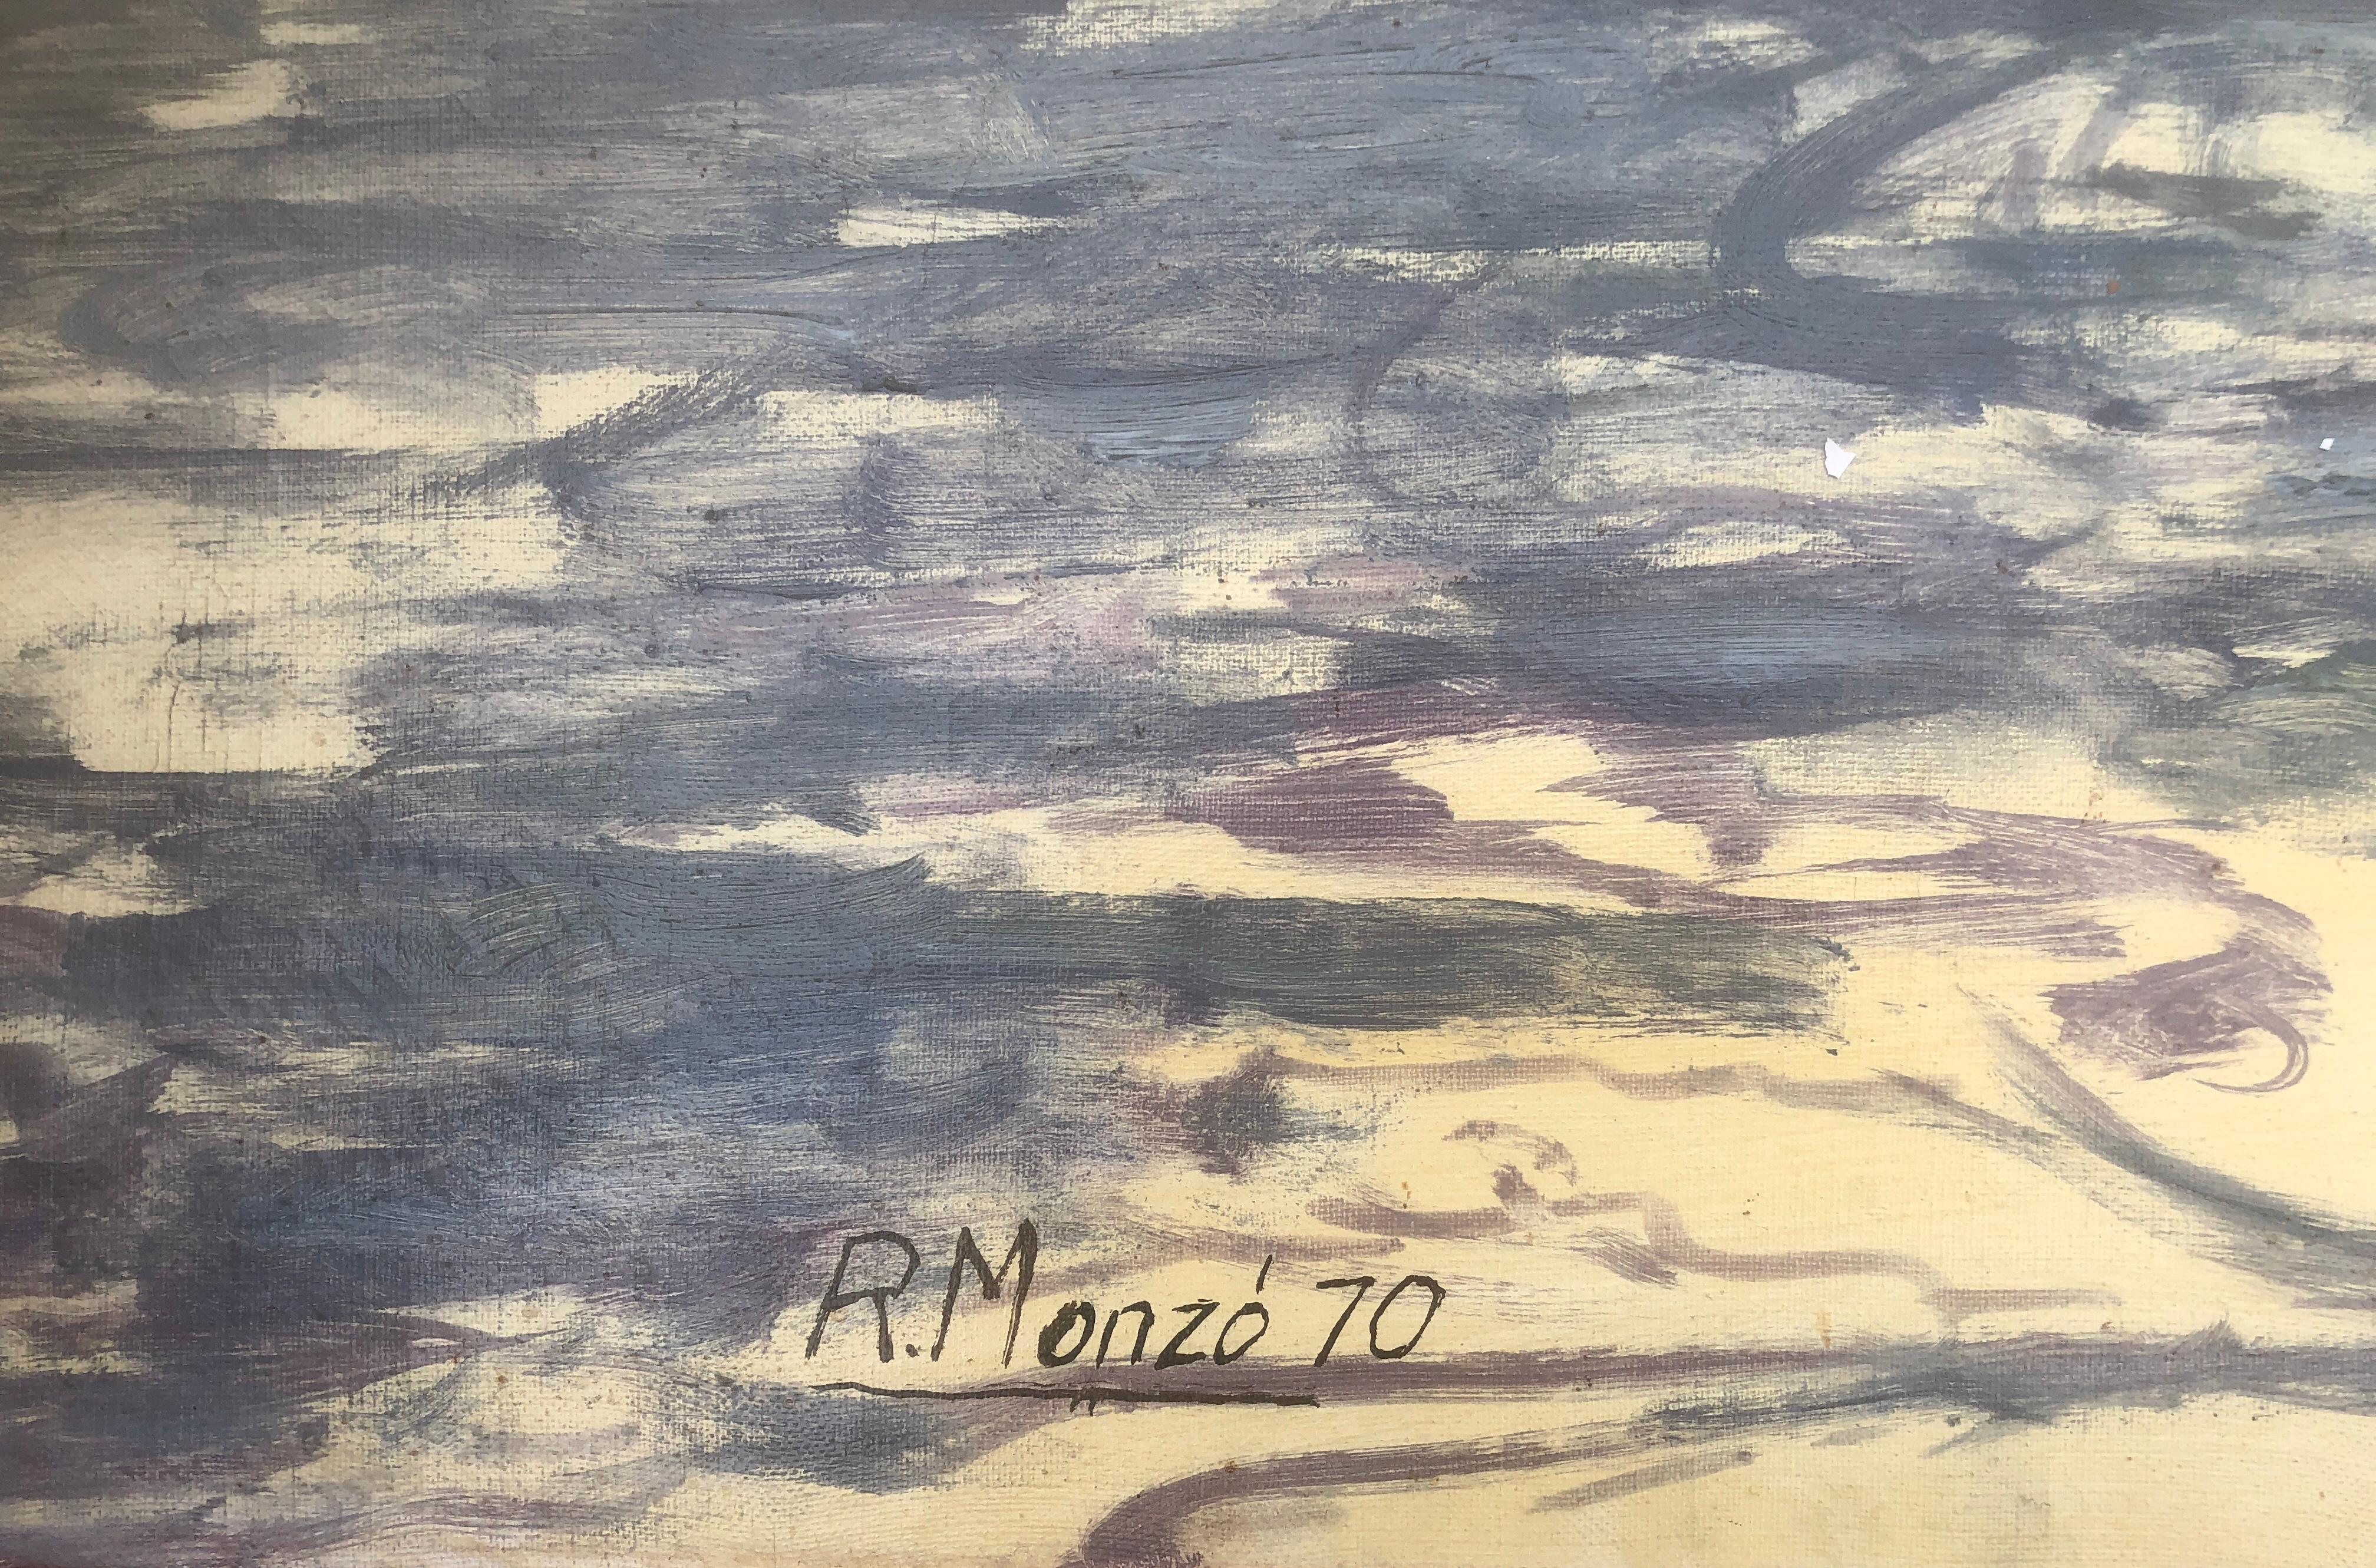 Sitges, Spanien, Öl auf Leinwand, mediterrane Meereslandschaft, Stadtlandschaft – Painting von Rafael Monzo